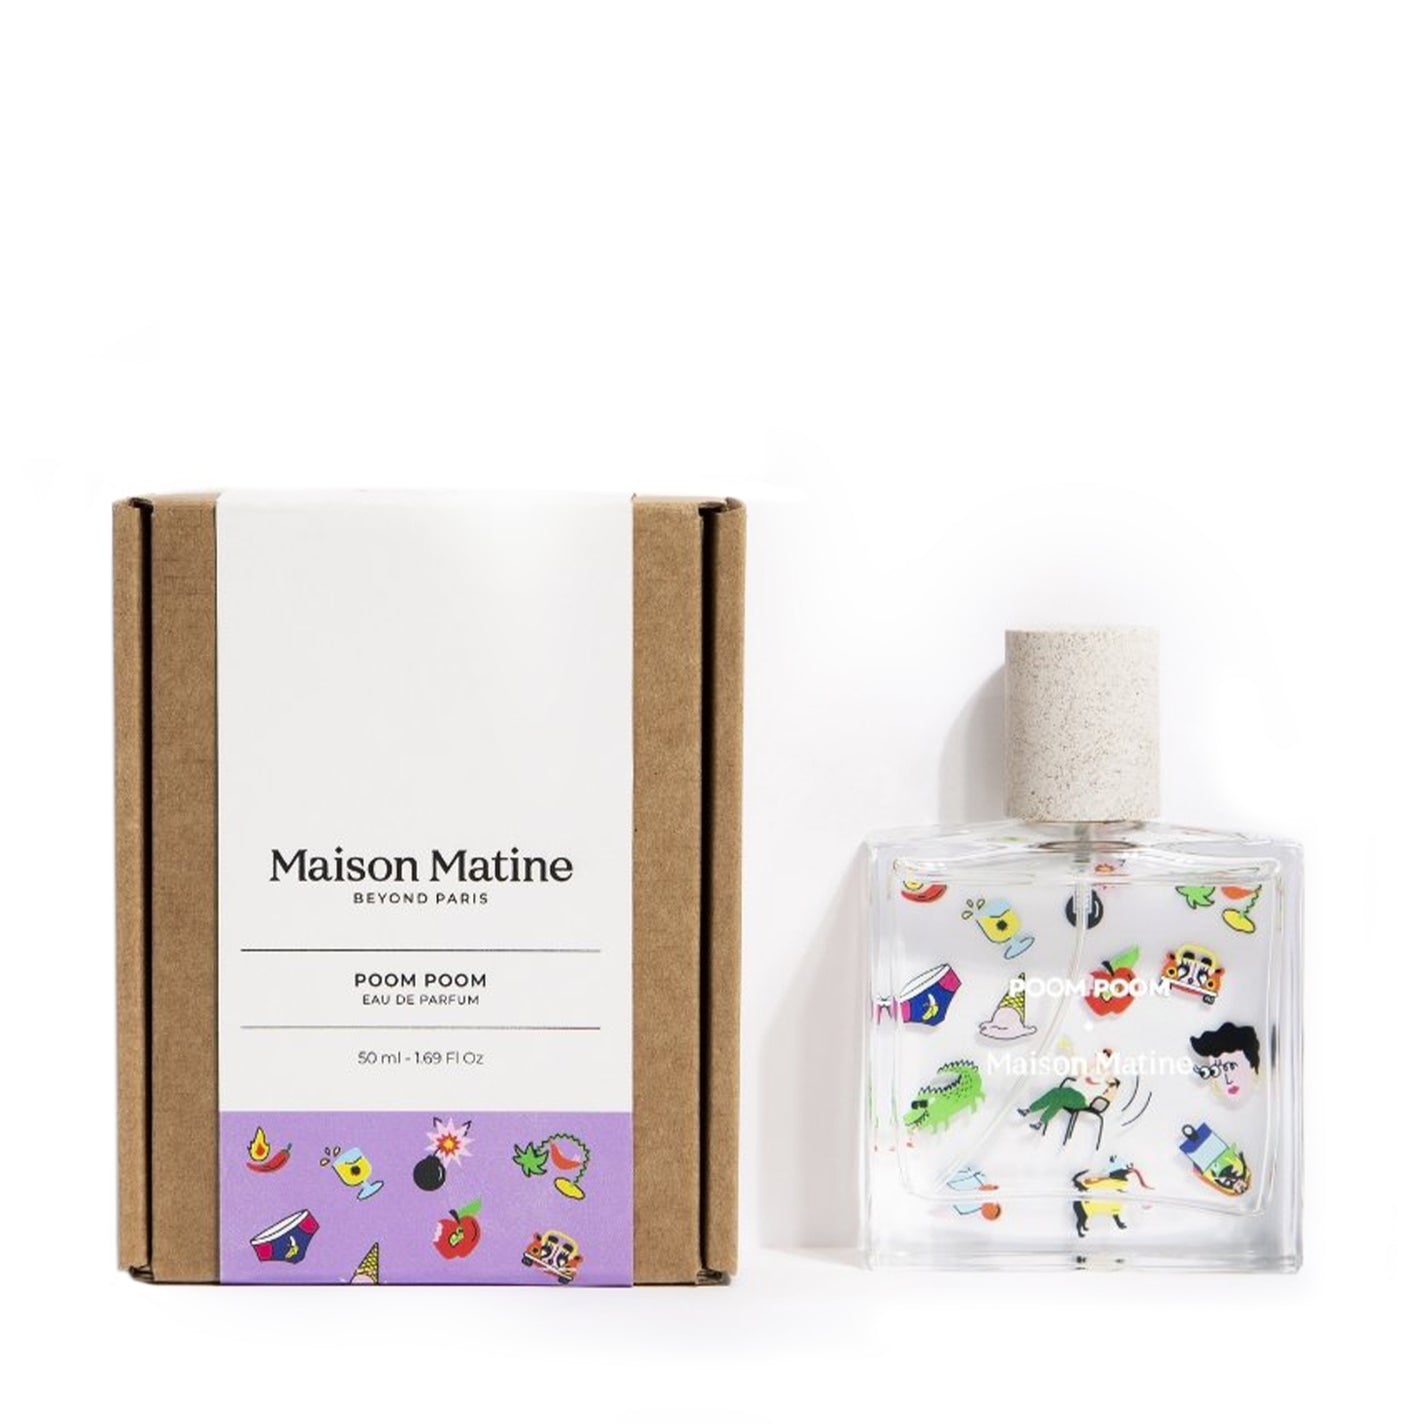 Maison Matine Poom Poom Eau de Parfum - 50ml